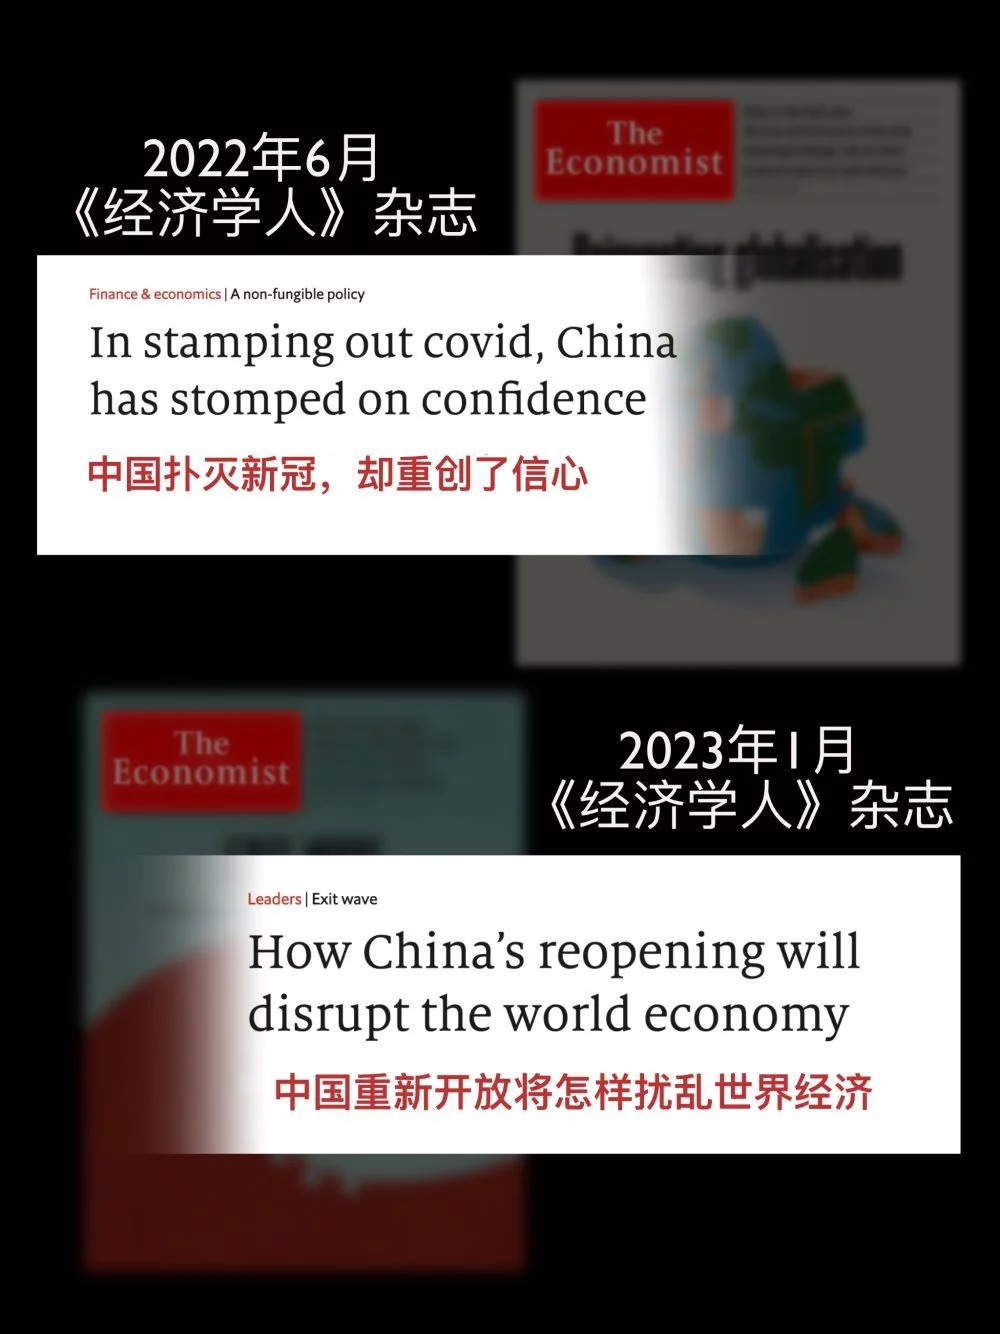 西方媒体：中国怎么做都是错的